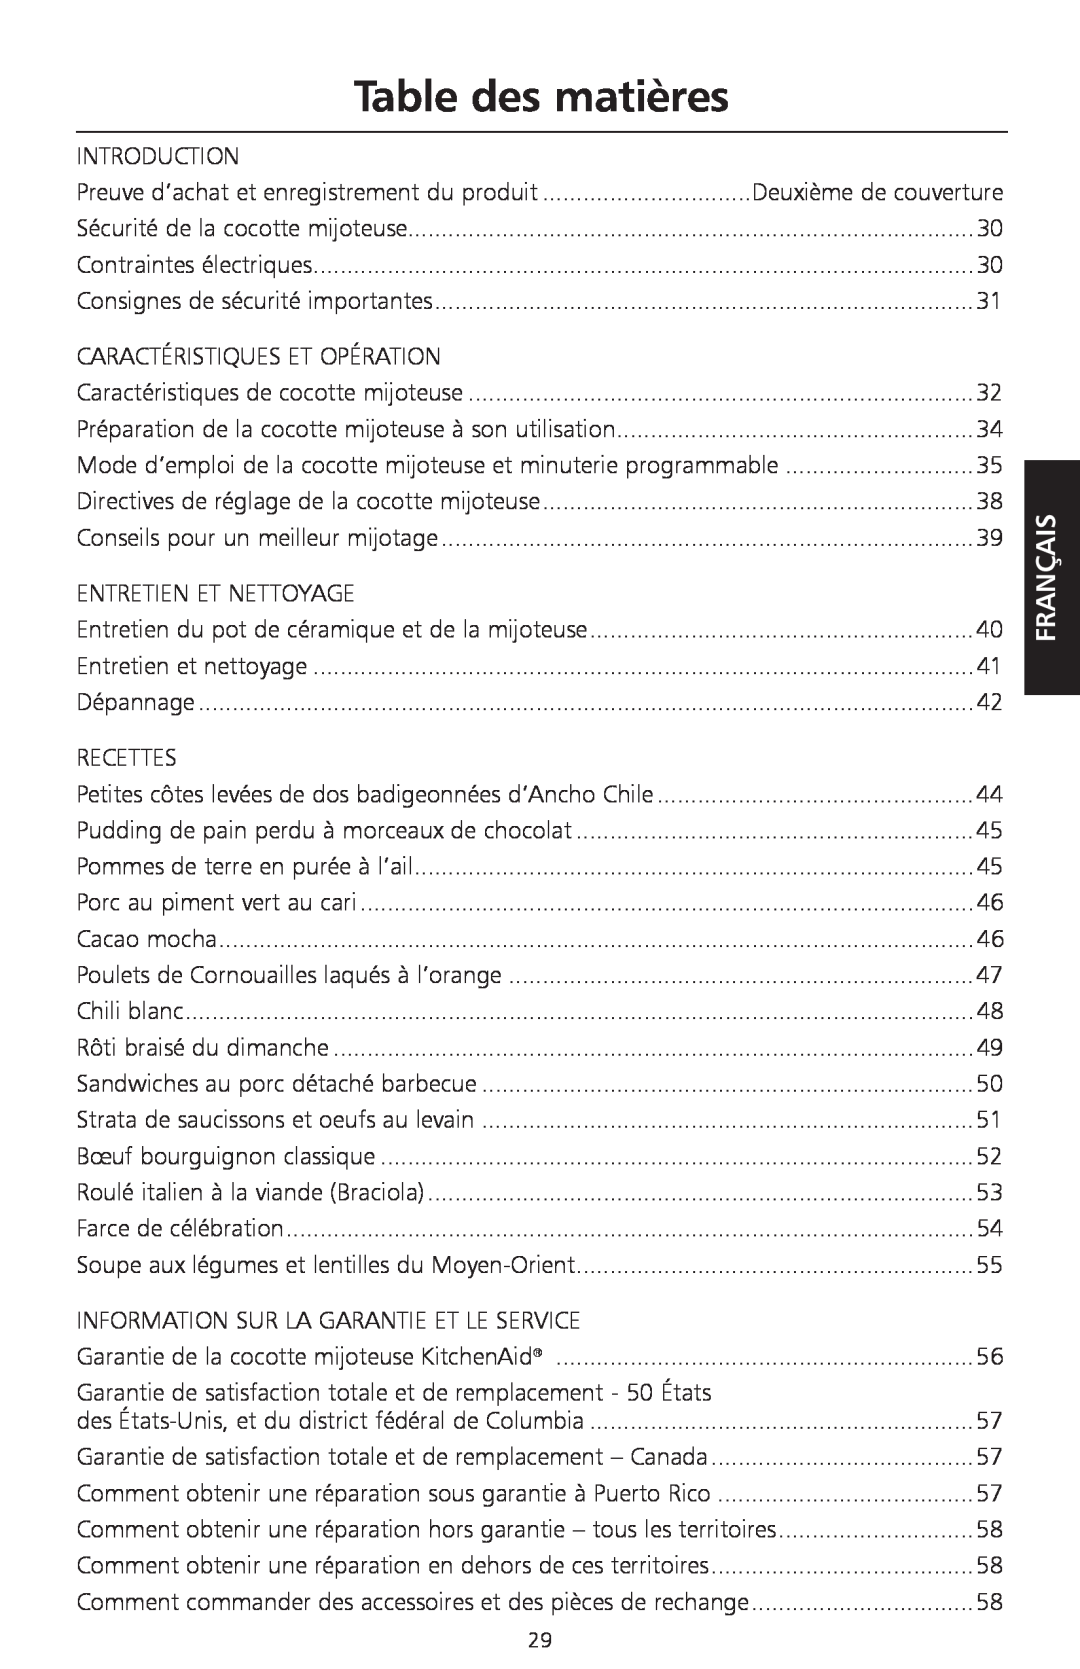 KitchenAid KSC700 manual Table des matières, Français 